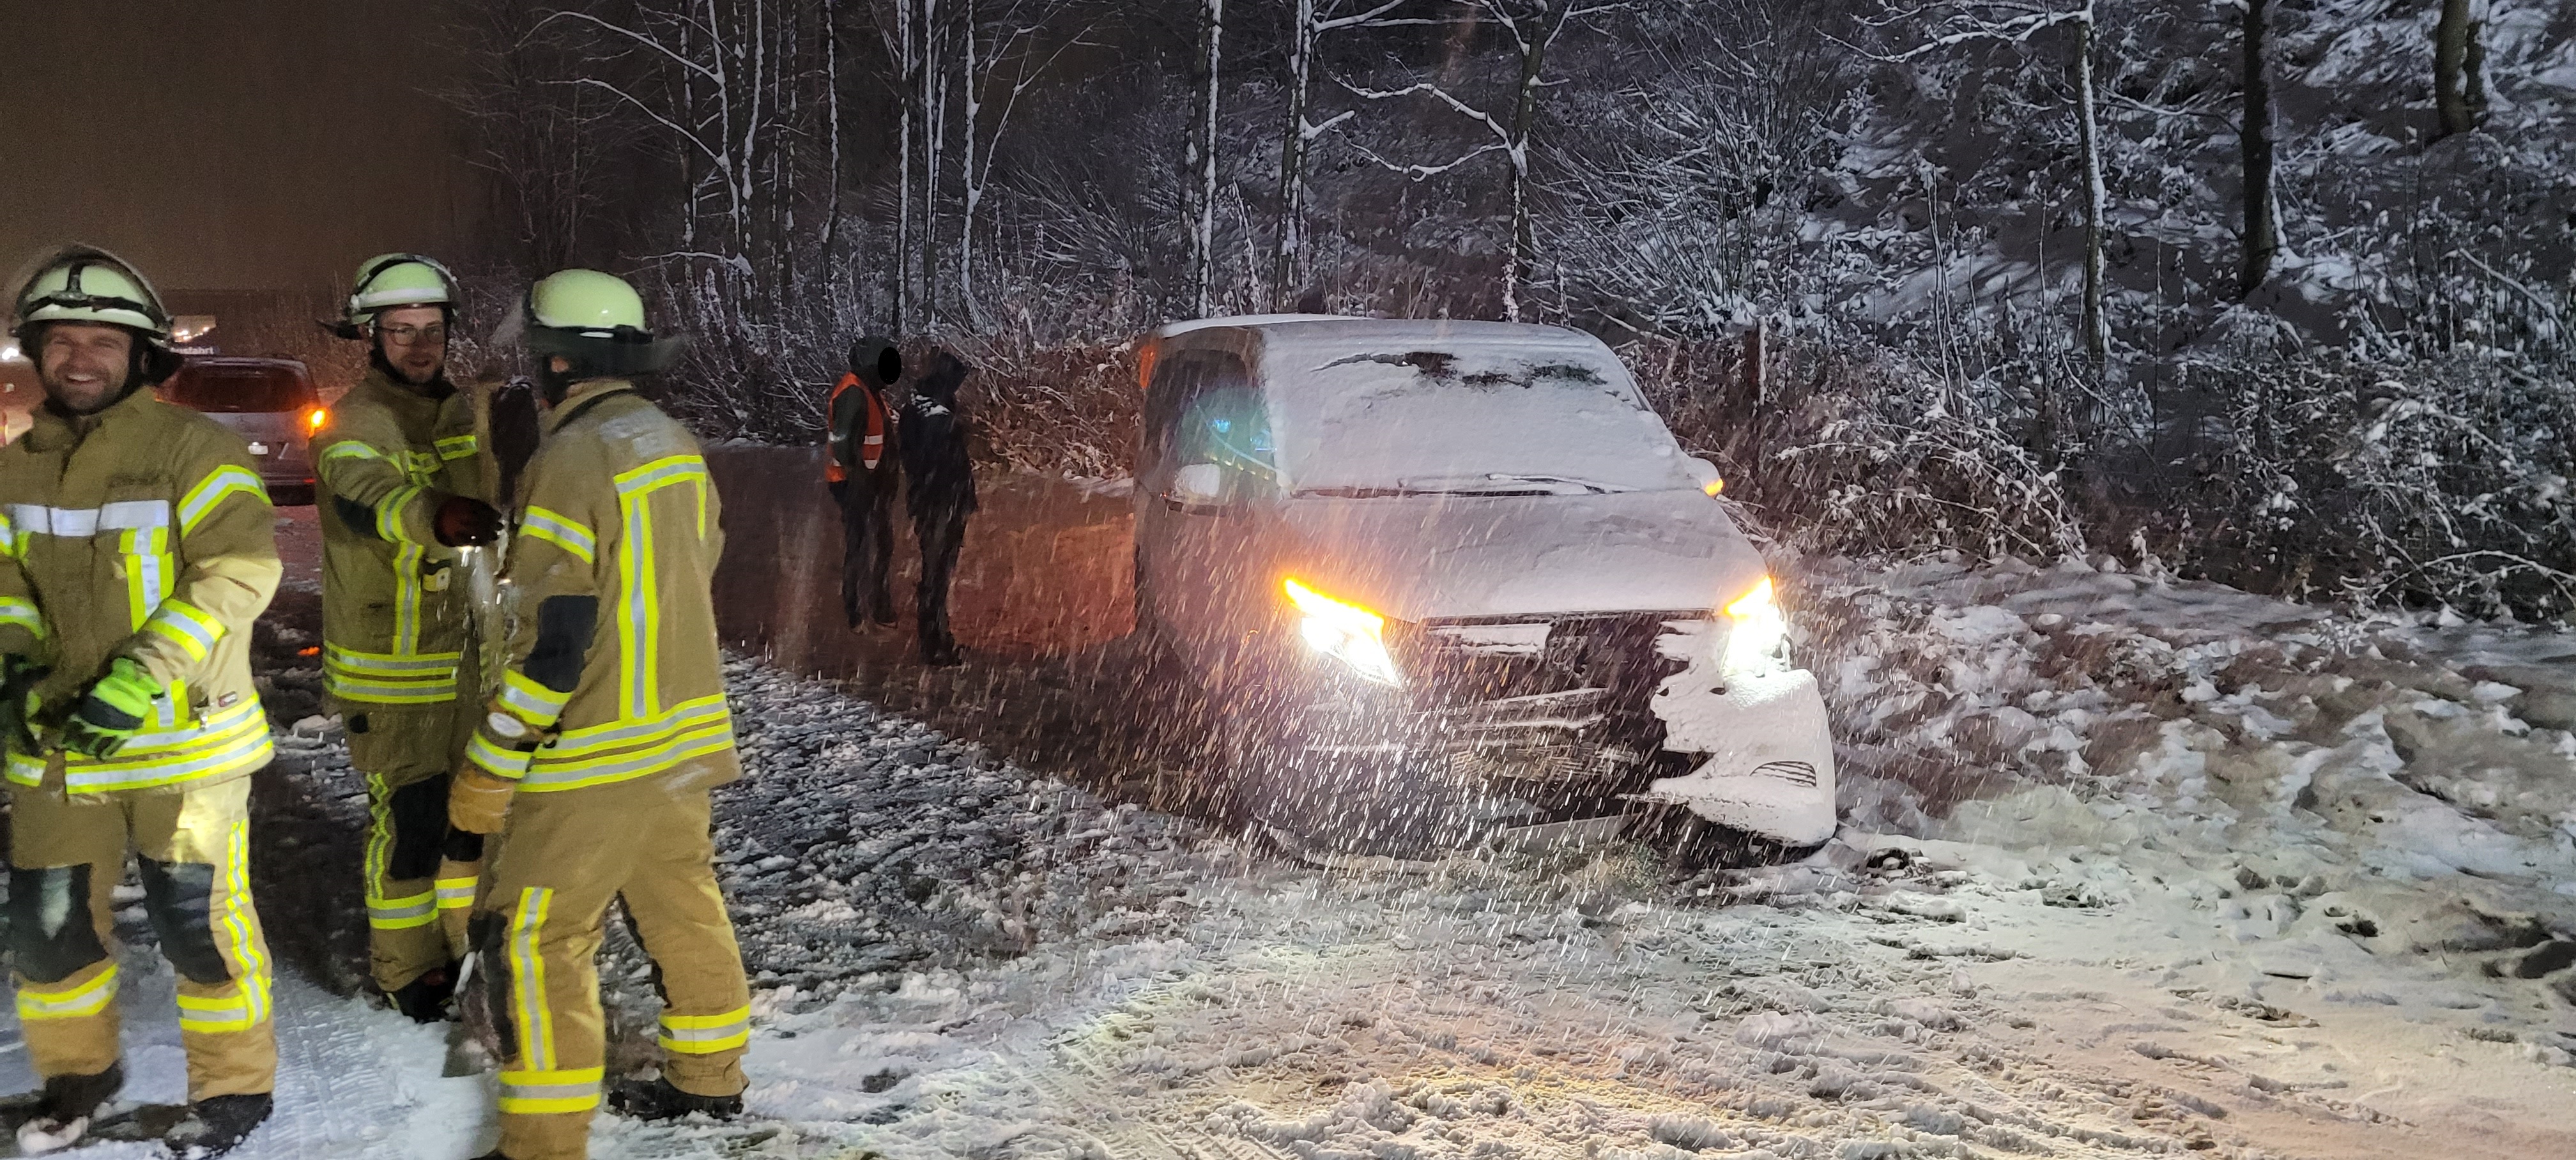 Ein Kleinbus mit acht Insassen kam bei dichtem Schneetreiben von der Fahrbahn ab. Eine Person wurde verletzt. Die Feuerwehr Bergen leistete technische Hilfe